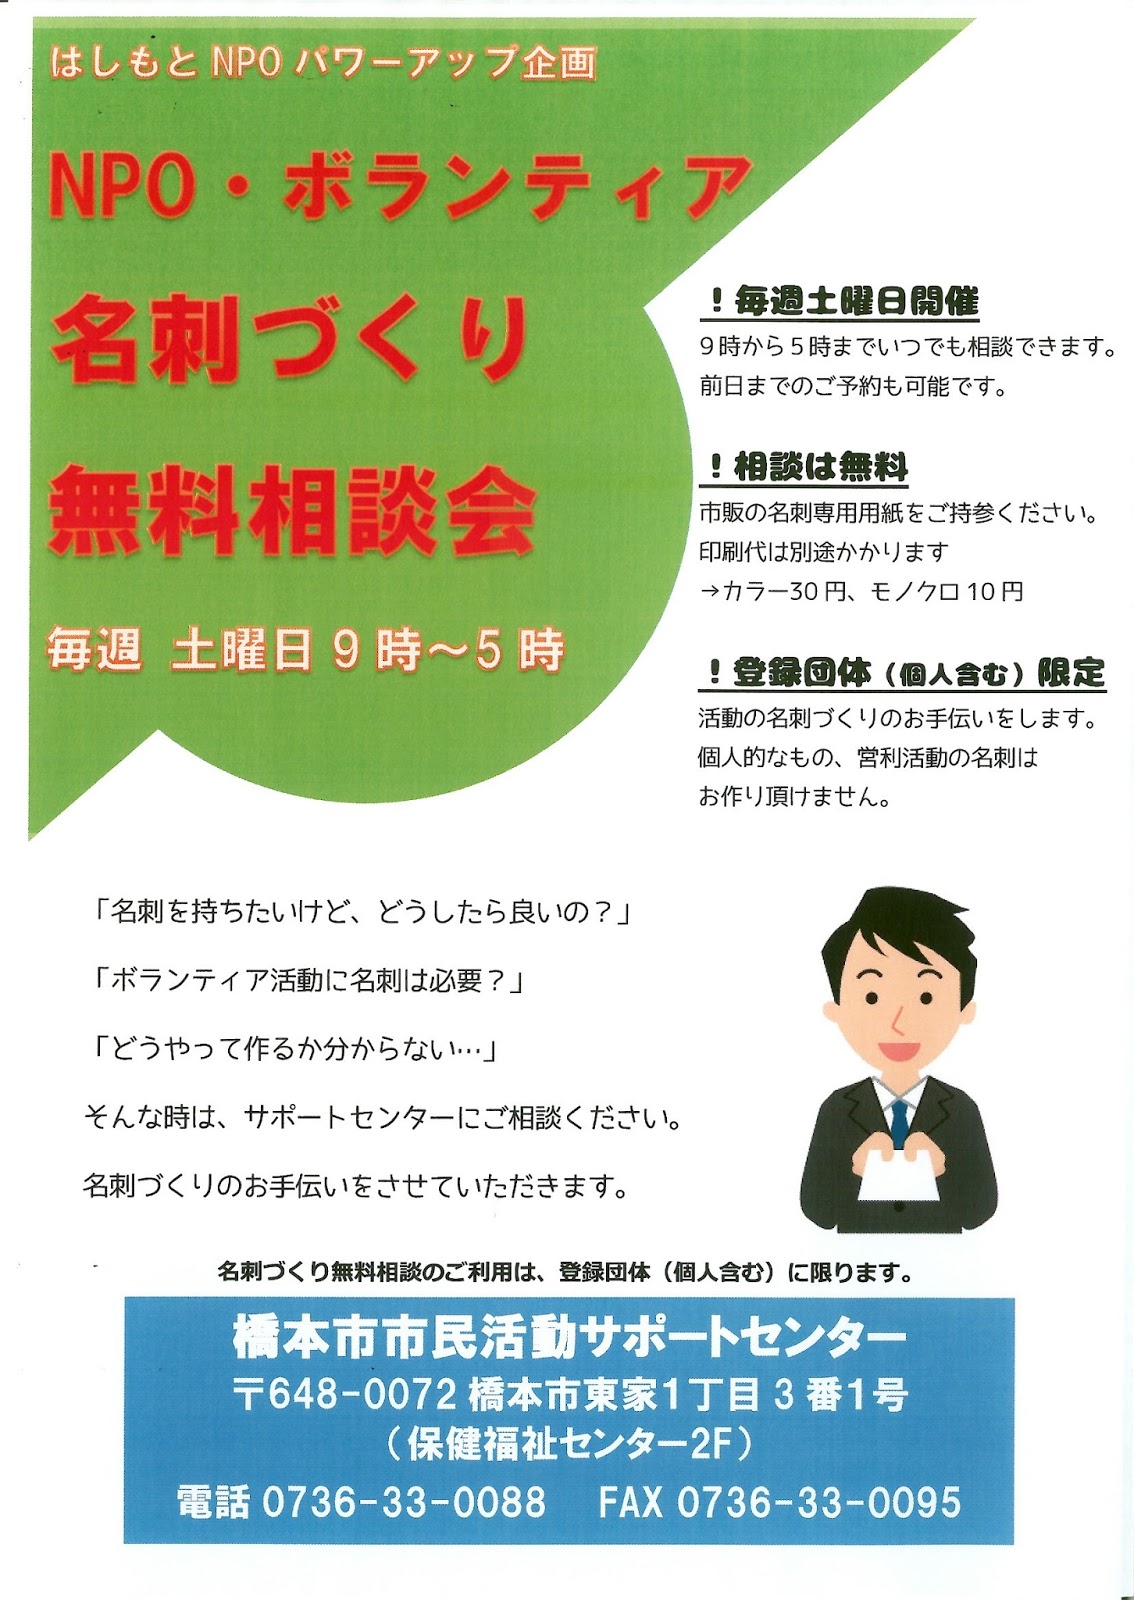 橋本市 市民活動サポートセンター: はしもとNPOパワーアップ企画 NPO